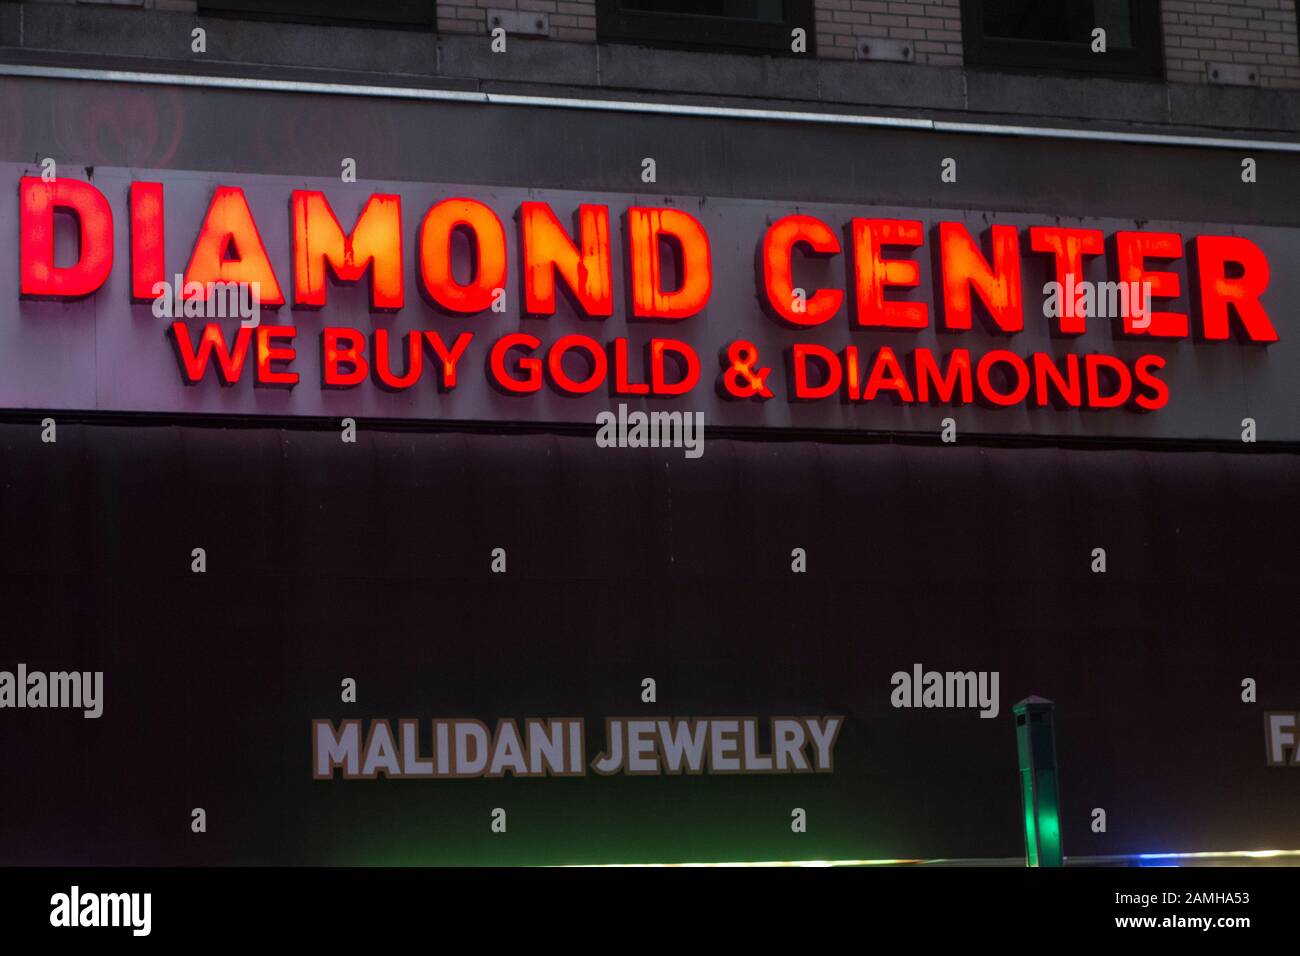 Malidani Jewellery, Diamond Center dans le quartier des diamants sur E. 47th Street, Midtown Manhattan, New York City, NY, États-Unis Banque D'Images